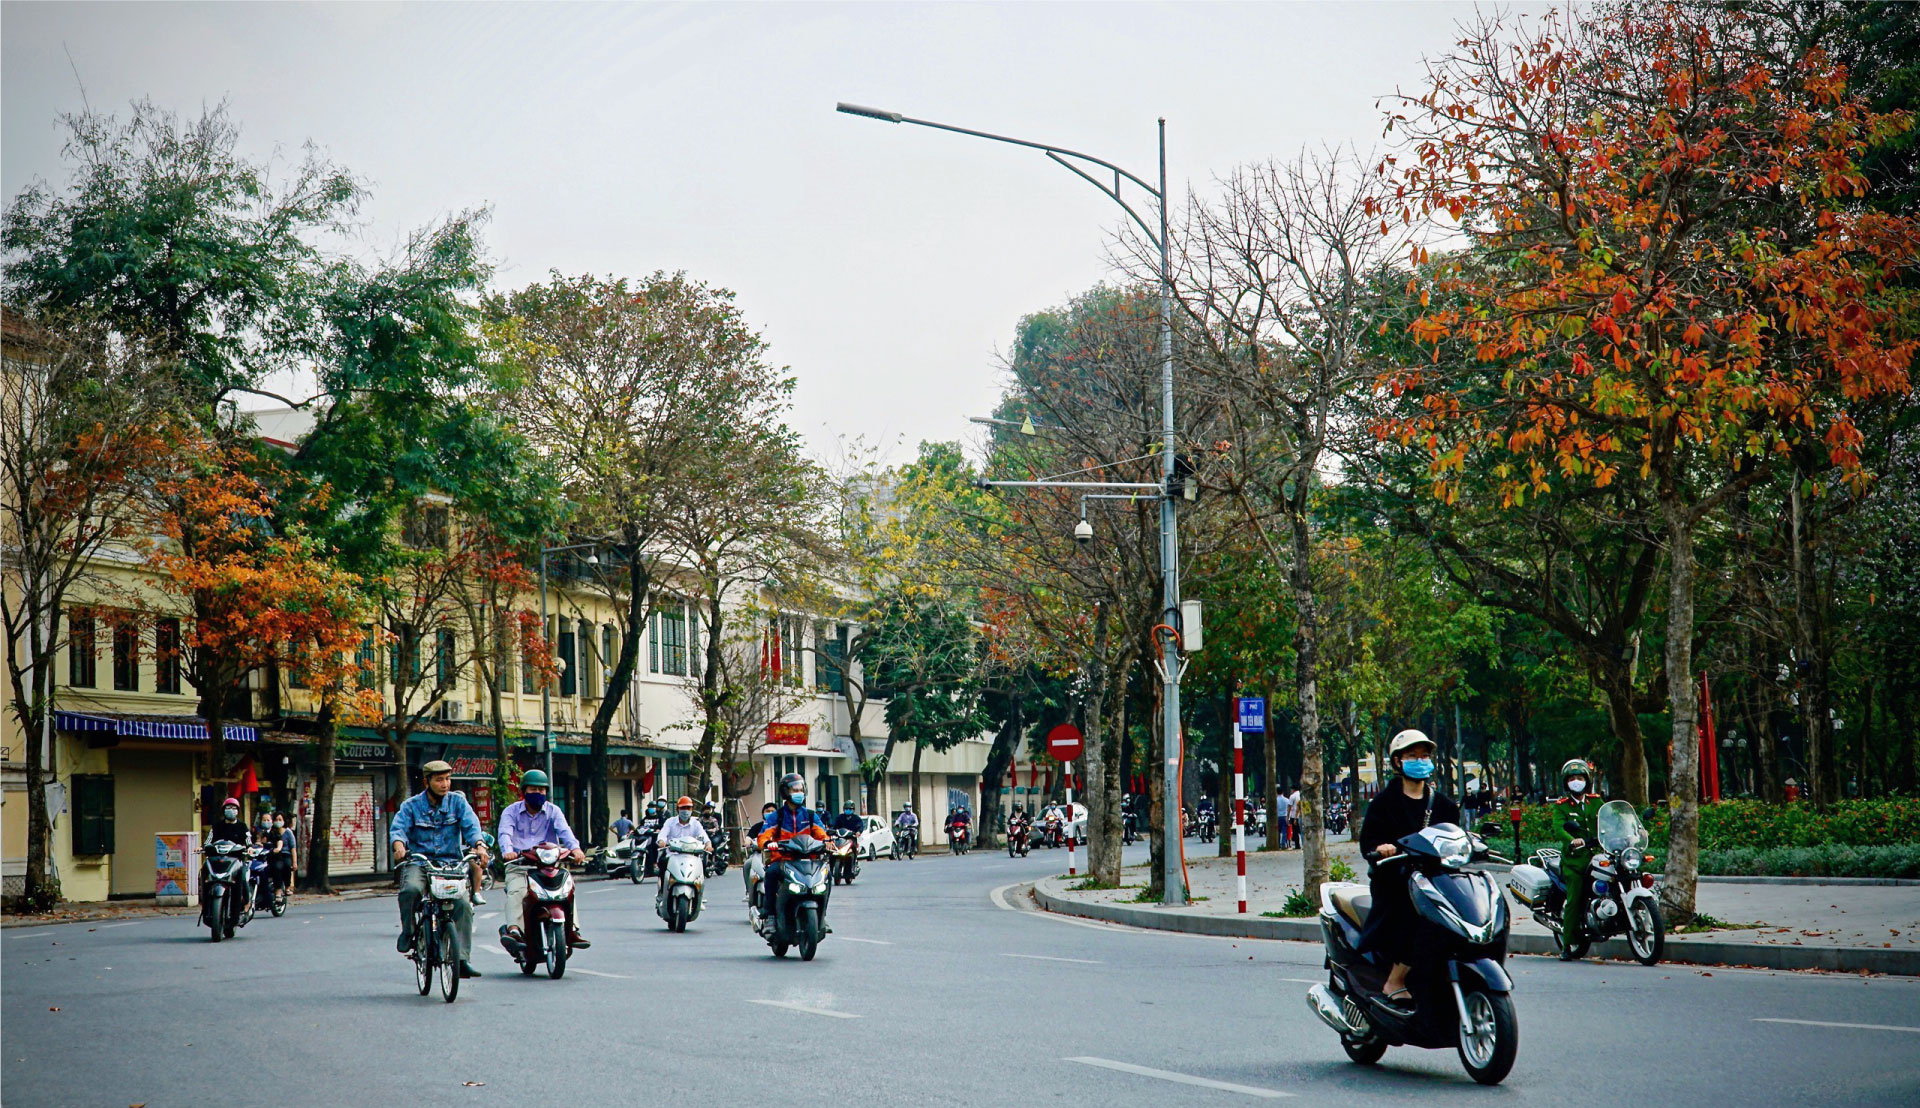 Gần dân, trọng dân, dựa vào dân để xây dựng Đảng – Kinh nghiệm từ Đảng bộ Thành phố Hà Nội